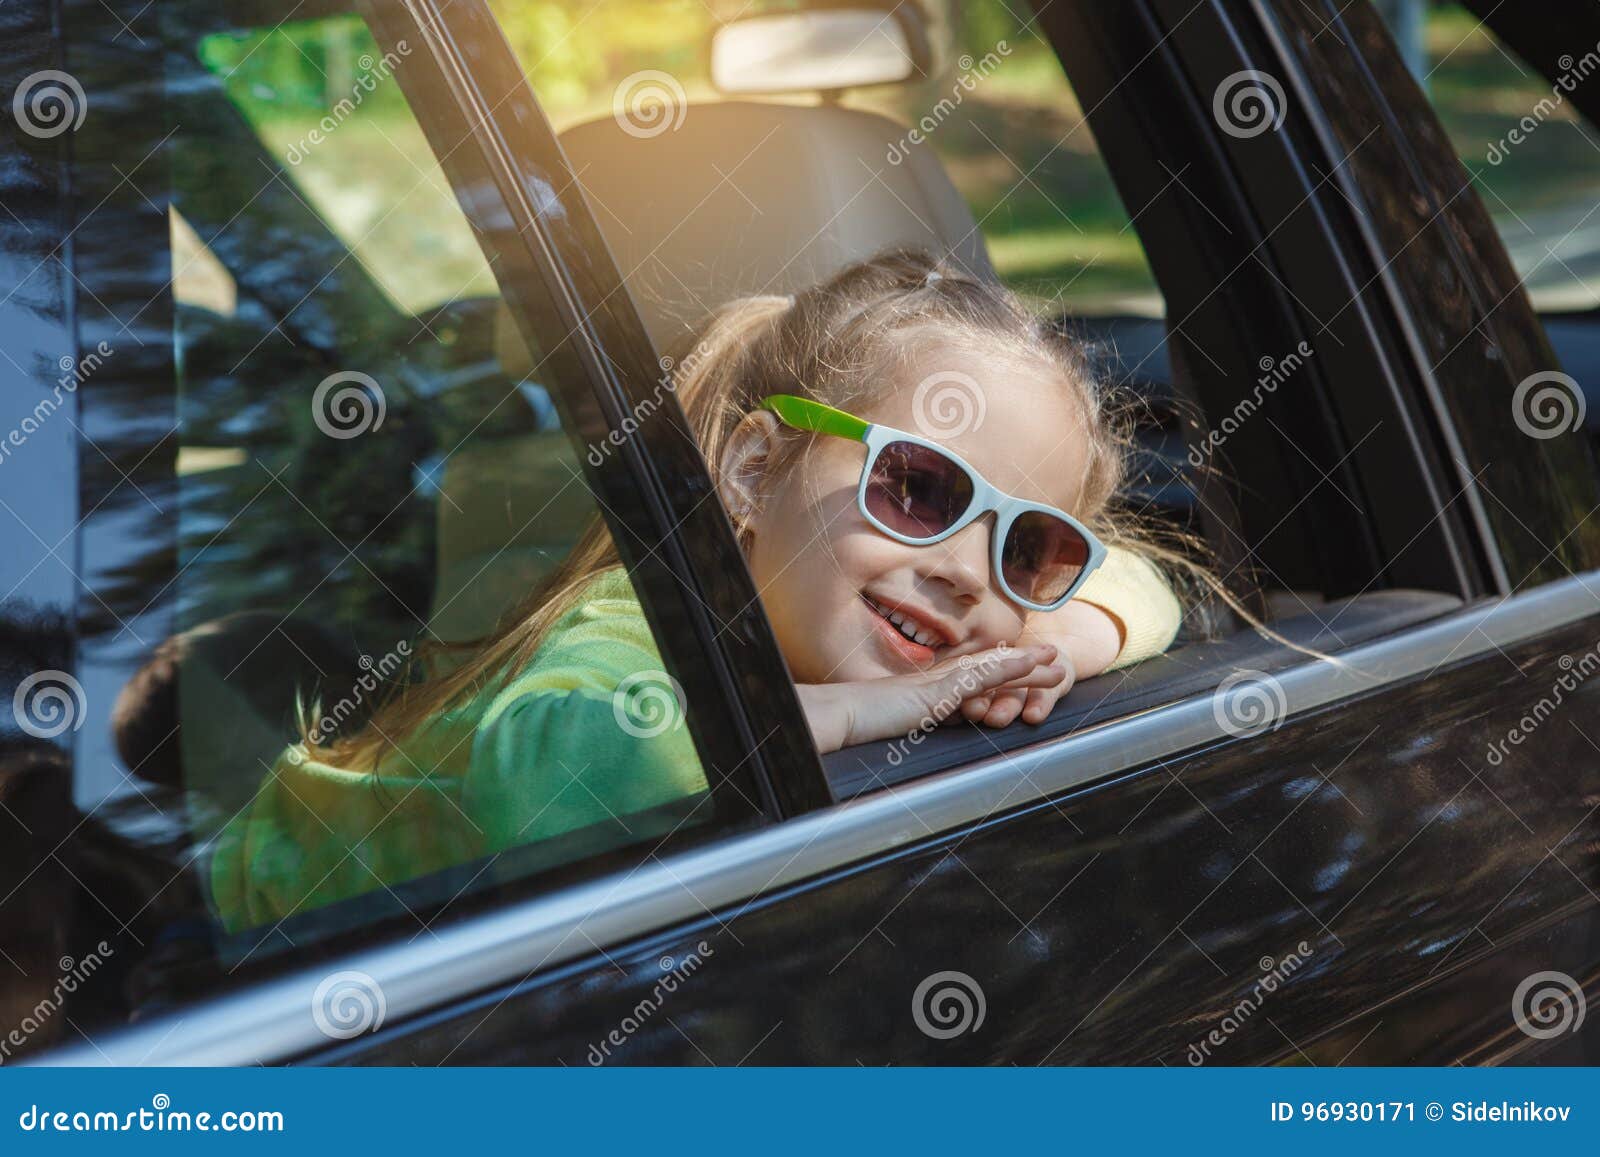 O curso pela viagem da família do carro vacation junto. Curso do carro da família do passeio por óculos de sol vestindo da menina junto